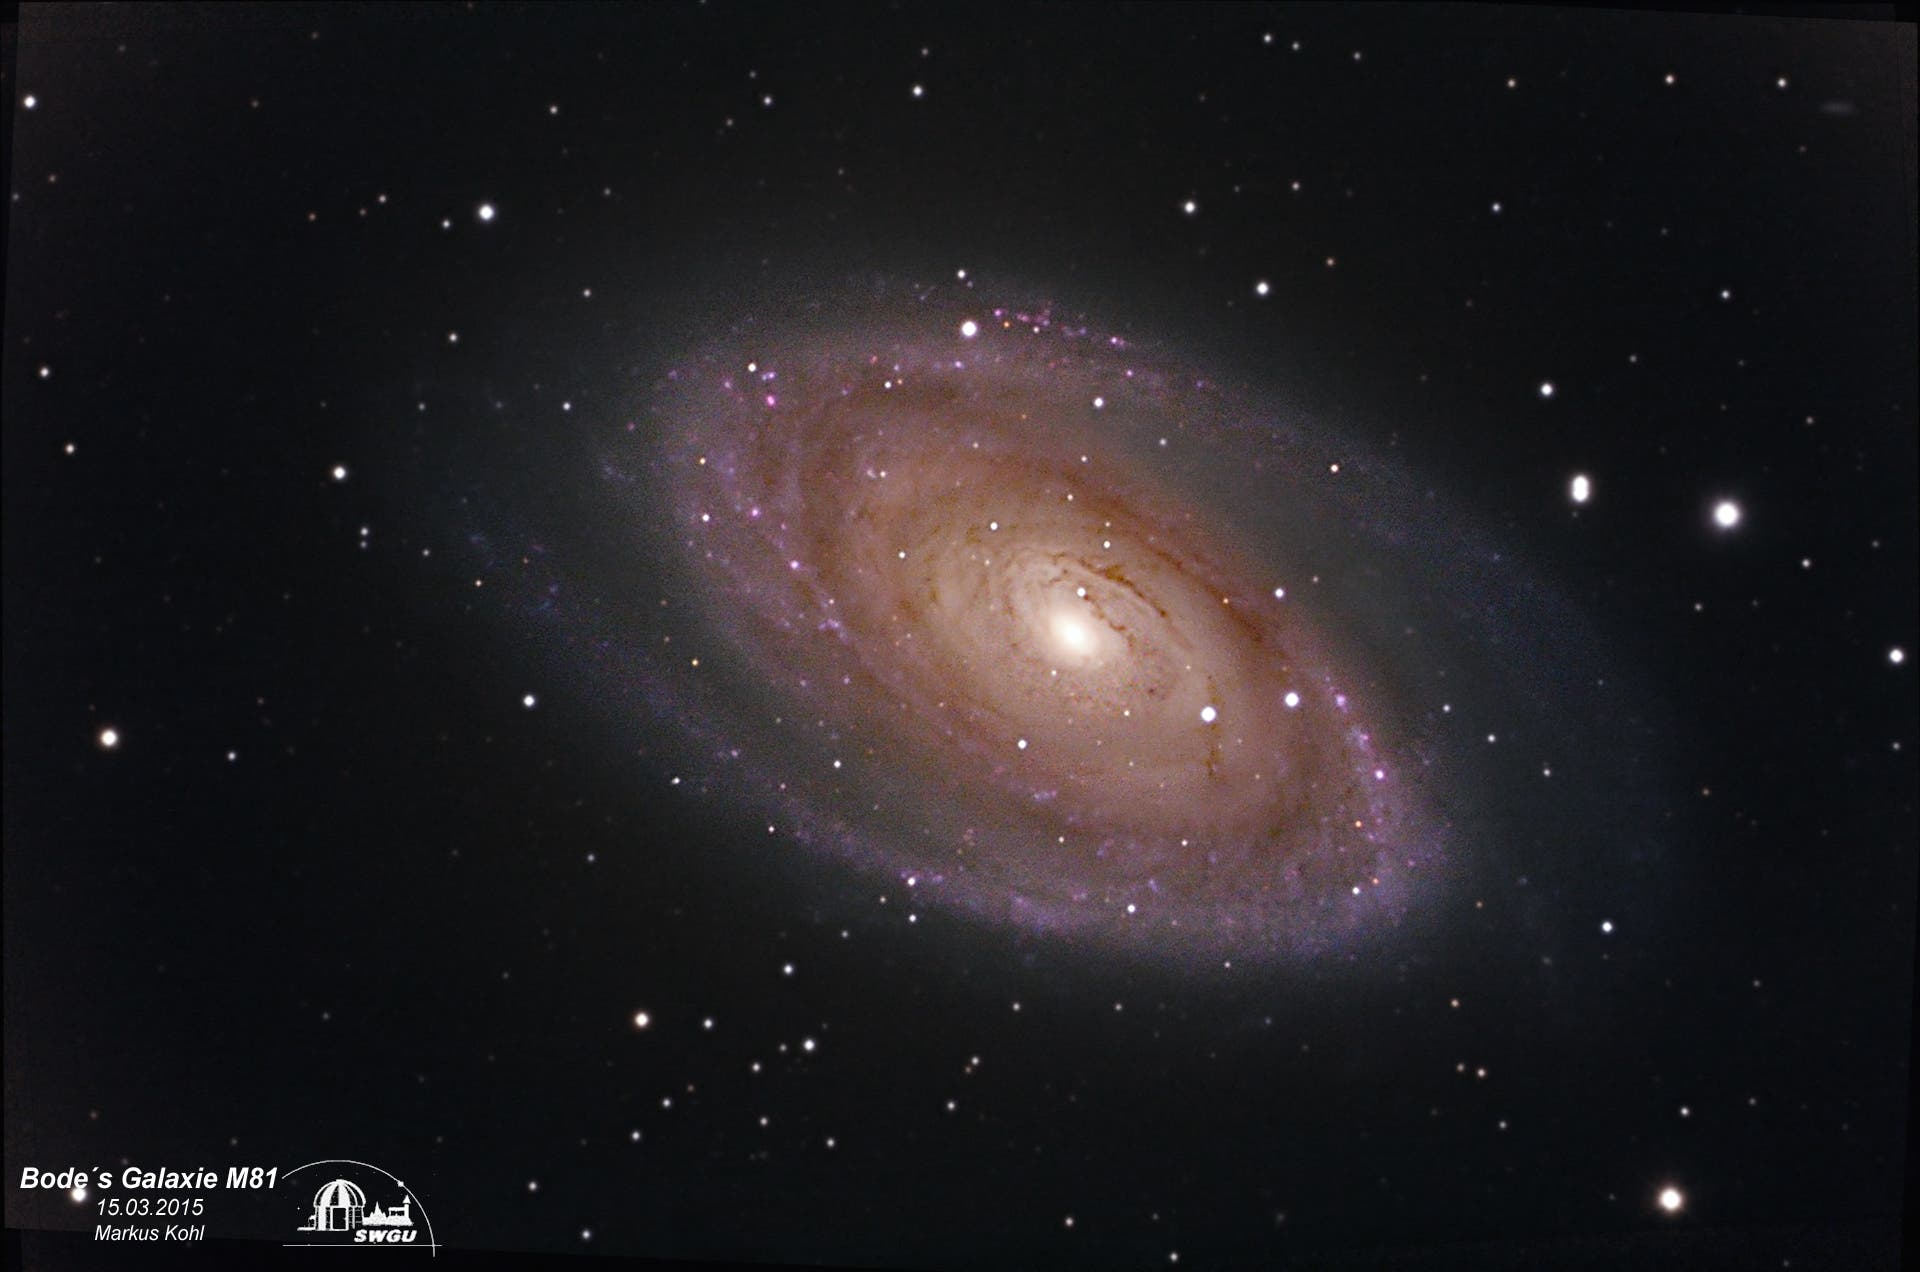 Bodes Galaxie M81